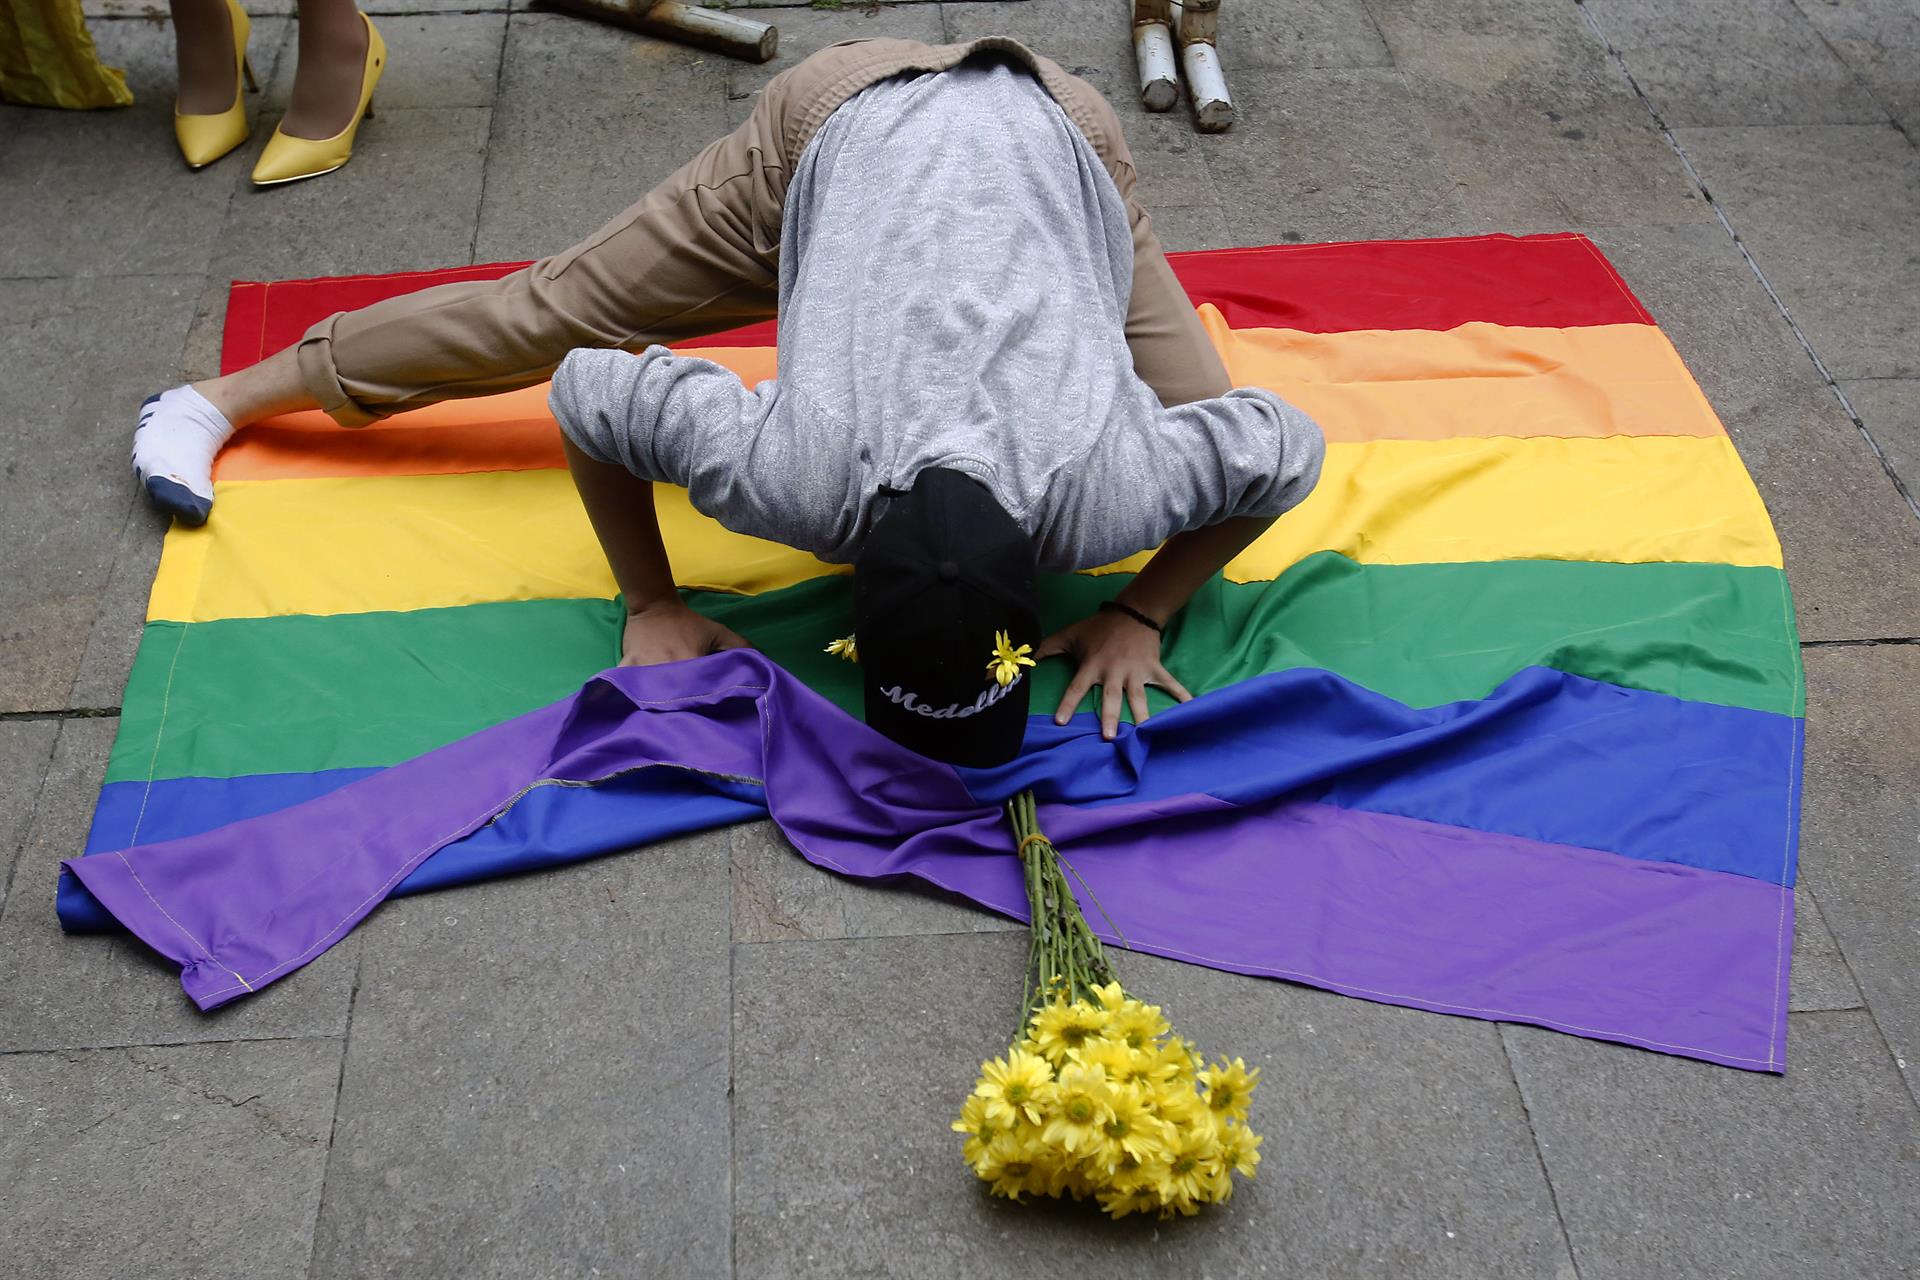 Cerca de 200 trans han sufrido violencia en Colombia y 26 mujeres trans fueron asesinadas